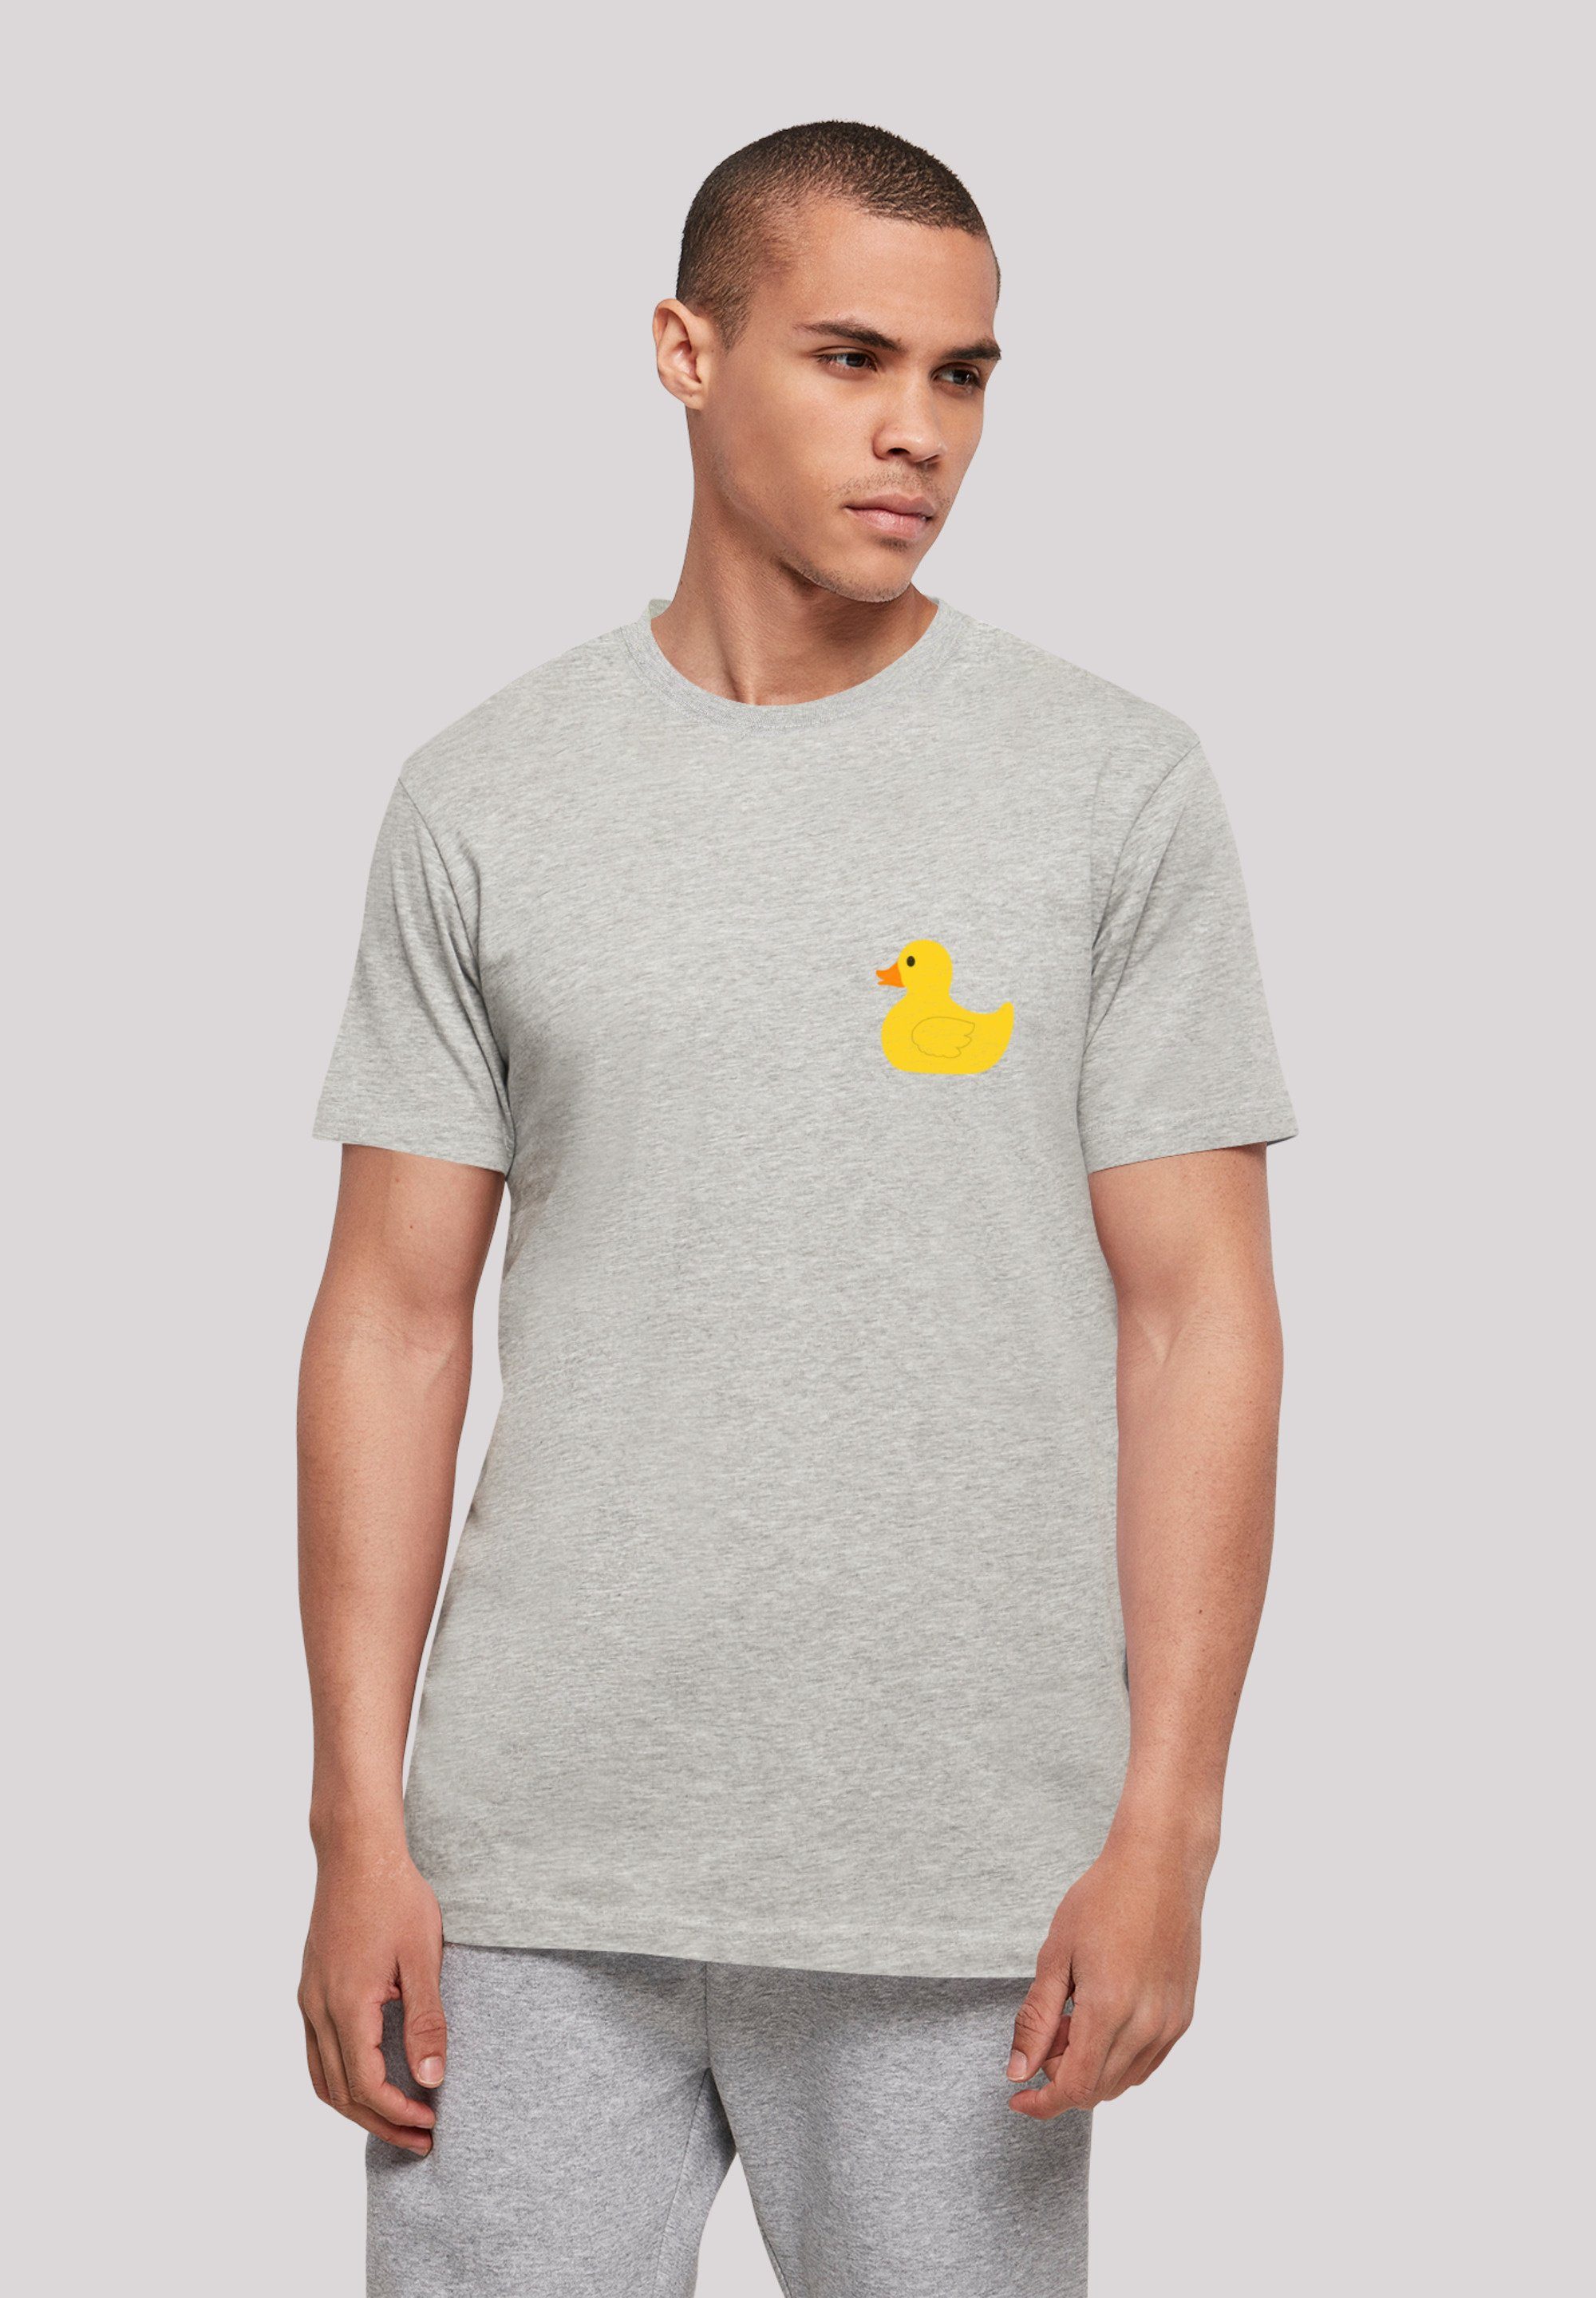 F4NT4STIC T-Shirt Yellow Rubber Duck TEE UNISEX Keine Angabe, Sehr weicher  Baumwollstoff mit hohem Tragekomfort